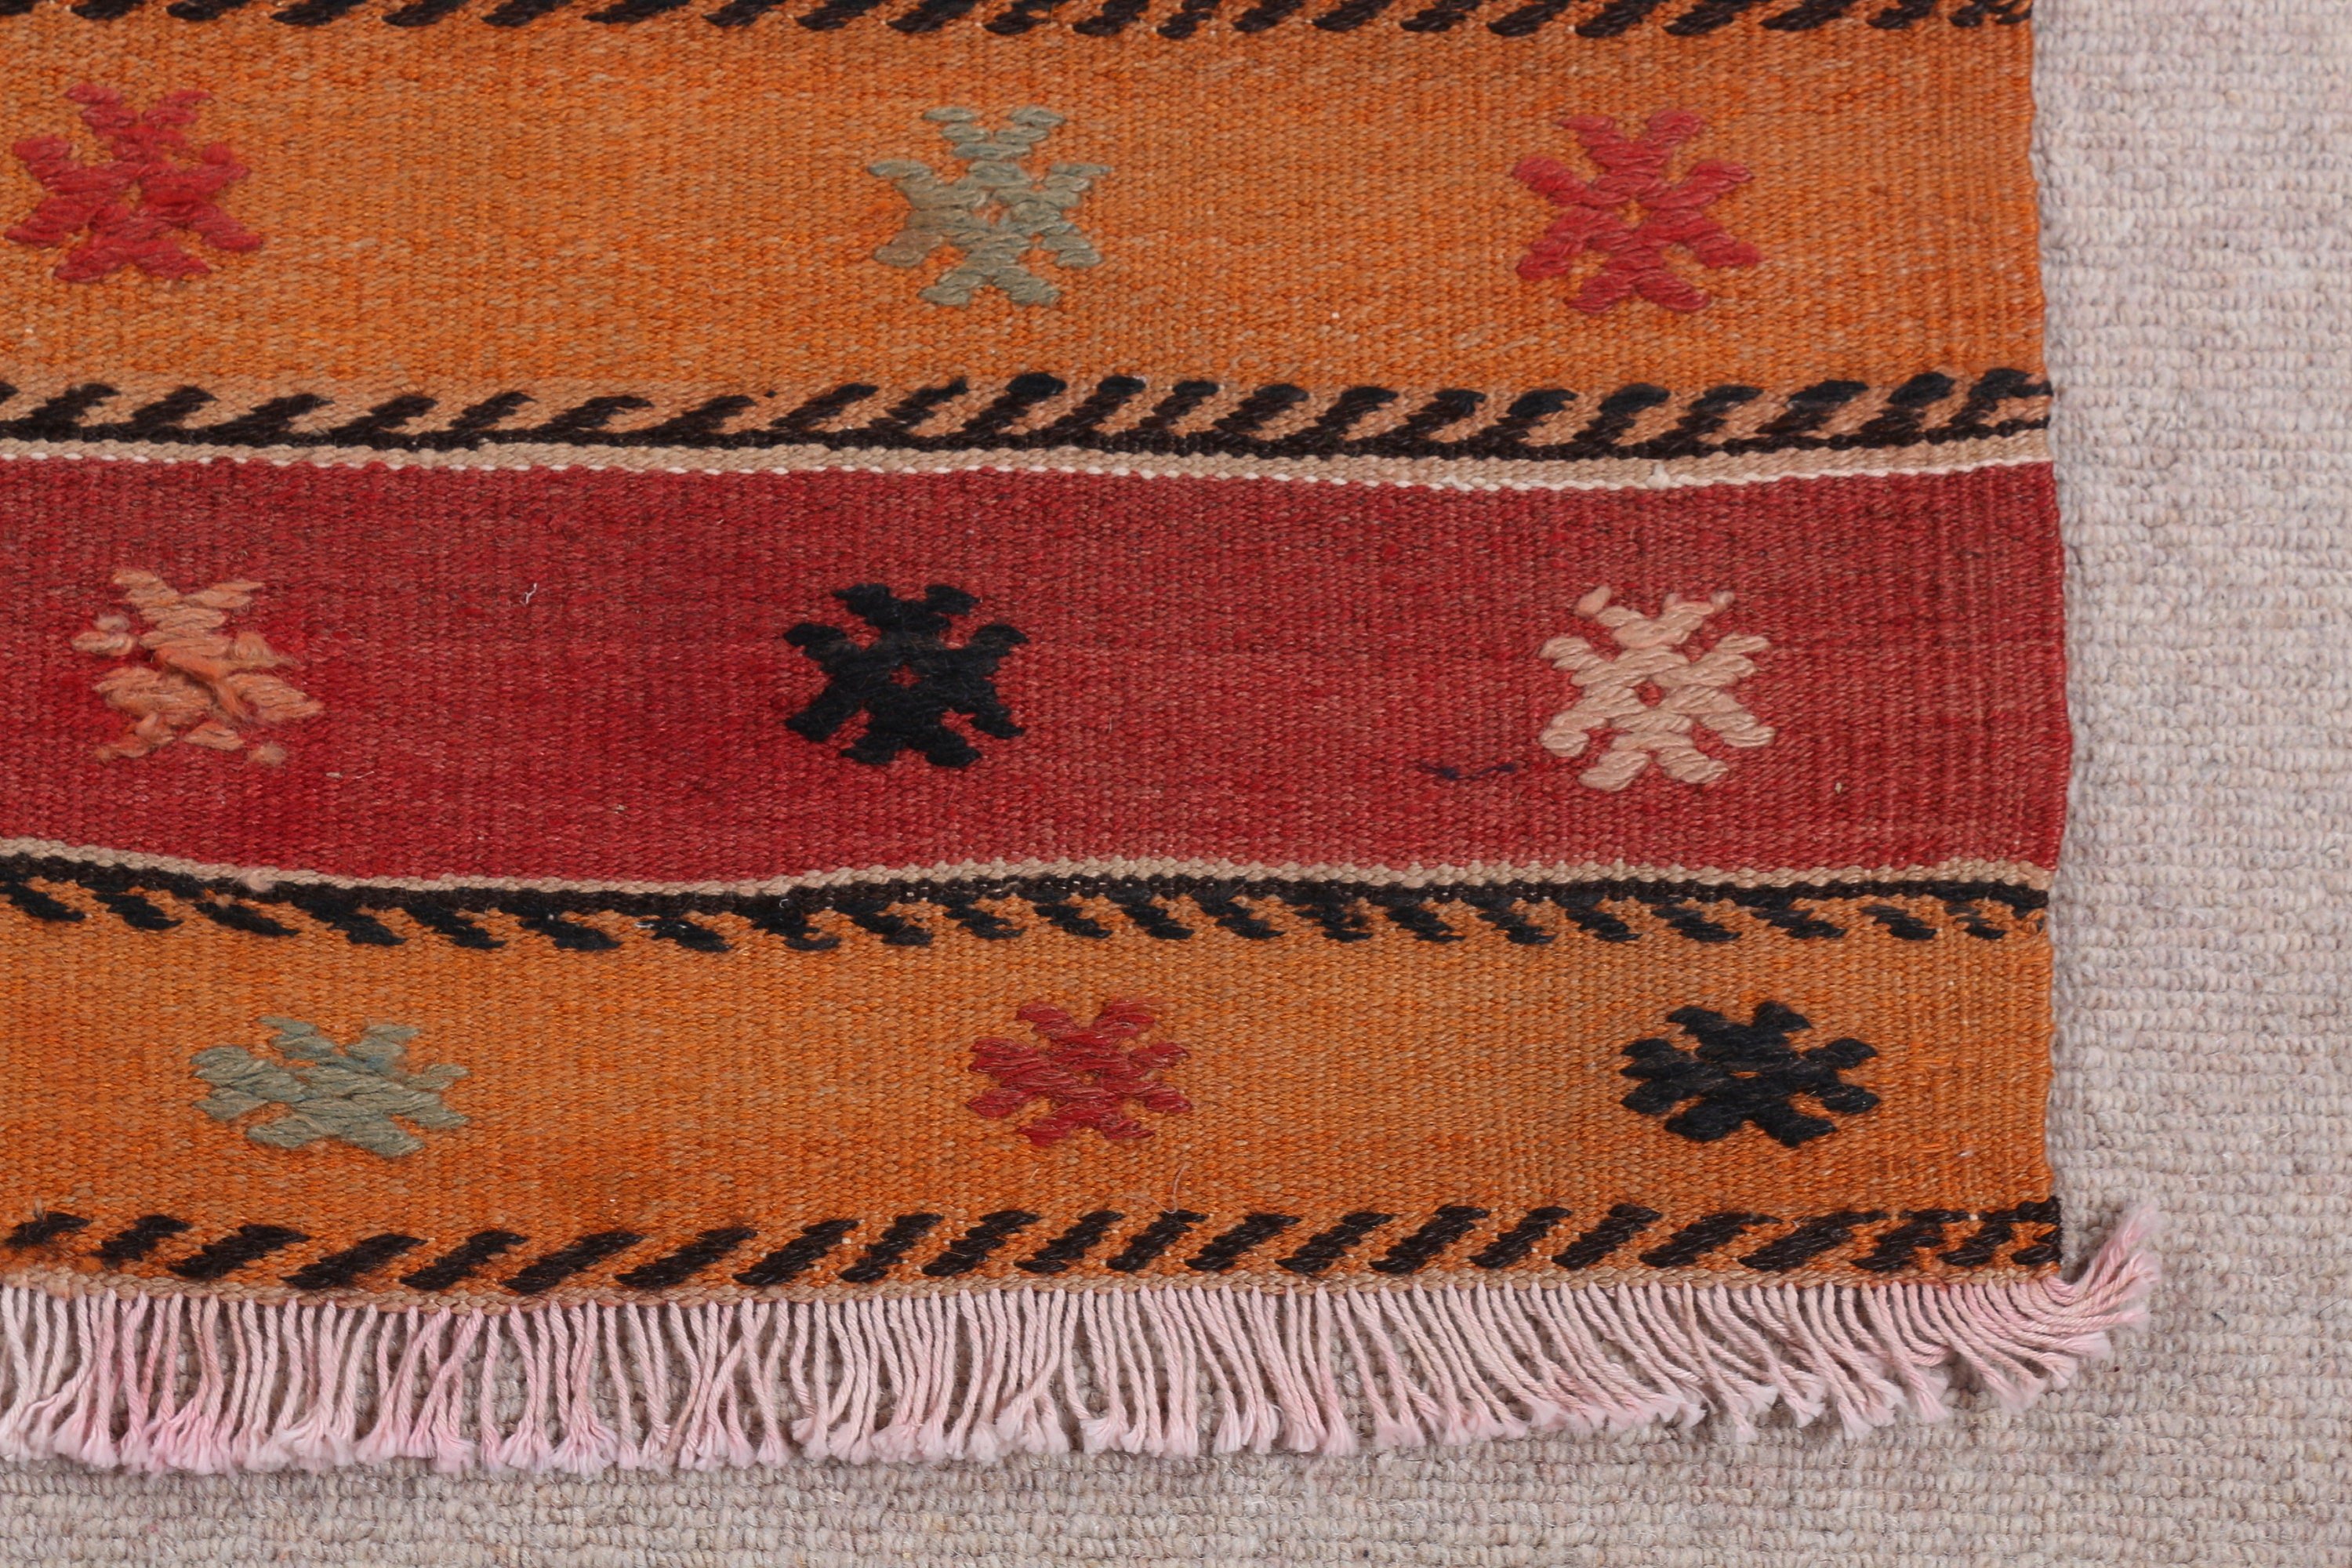 Brown Cool Rug, Vintage Rug, Anatolian Rug, Bathroom Rug, 1.8x3.1 ft Small Rug, Wall Hanging Rug, Turkish Rug, Moroccan Rugs, Kilim